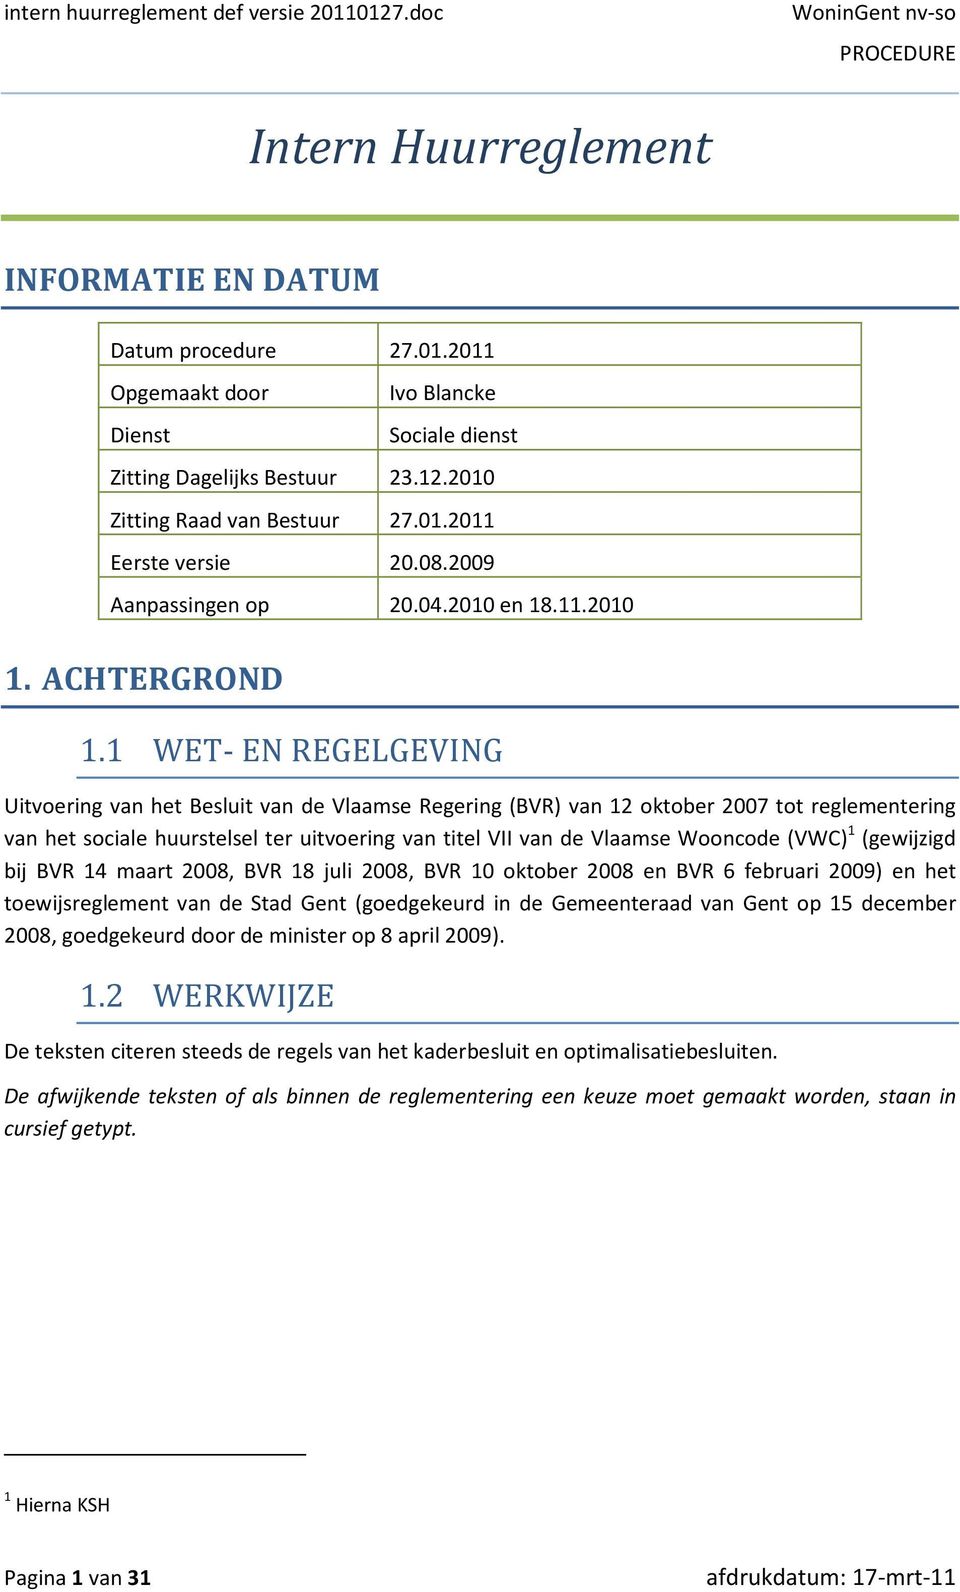 1 WET- EN REGELGEVING Uitvoering van het Besluit van de Vlaamse Regering (BVR) van 12 oktober 2007 tot reglementering van het sociale huurstelsel ter uitvoering van titel VII van de Vlaamse Wooncode